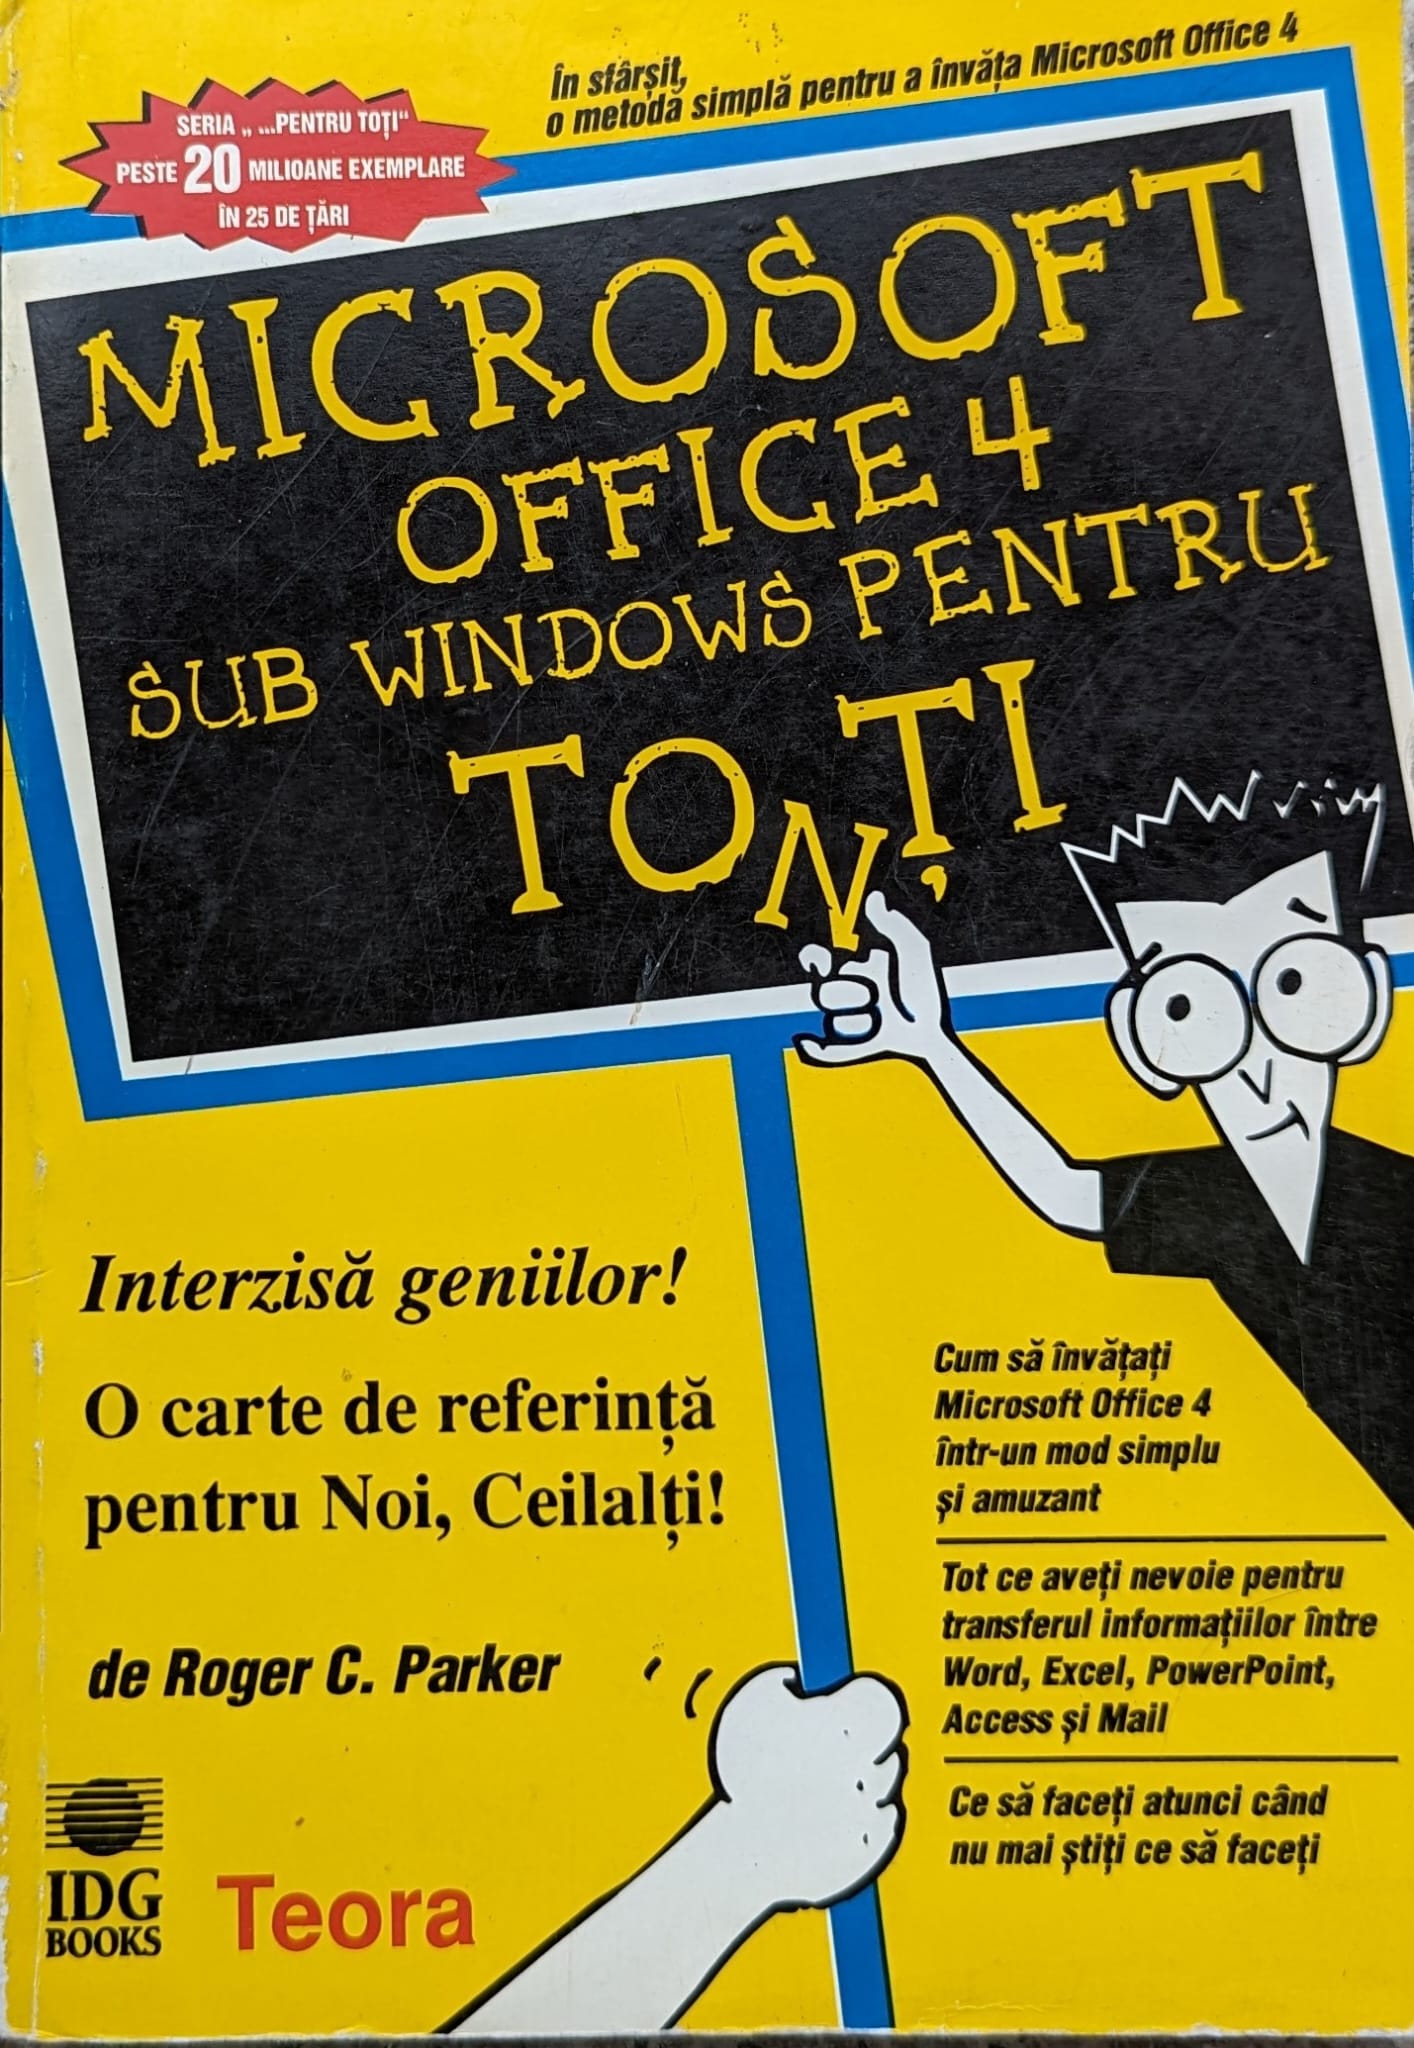 microsoft office 4 sub windows pentru toti                                                           roger c. parker                                                                                     